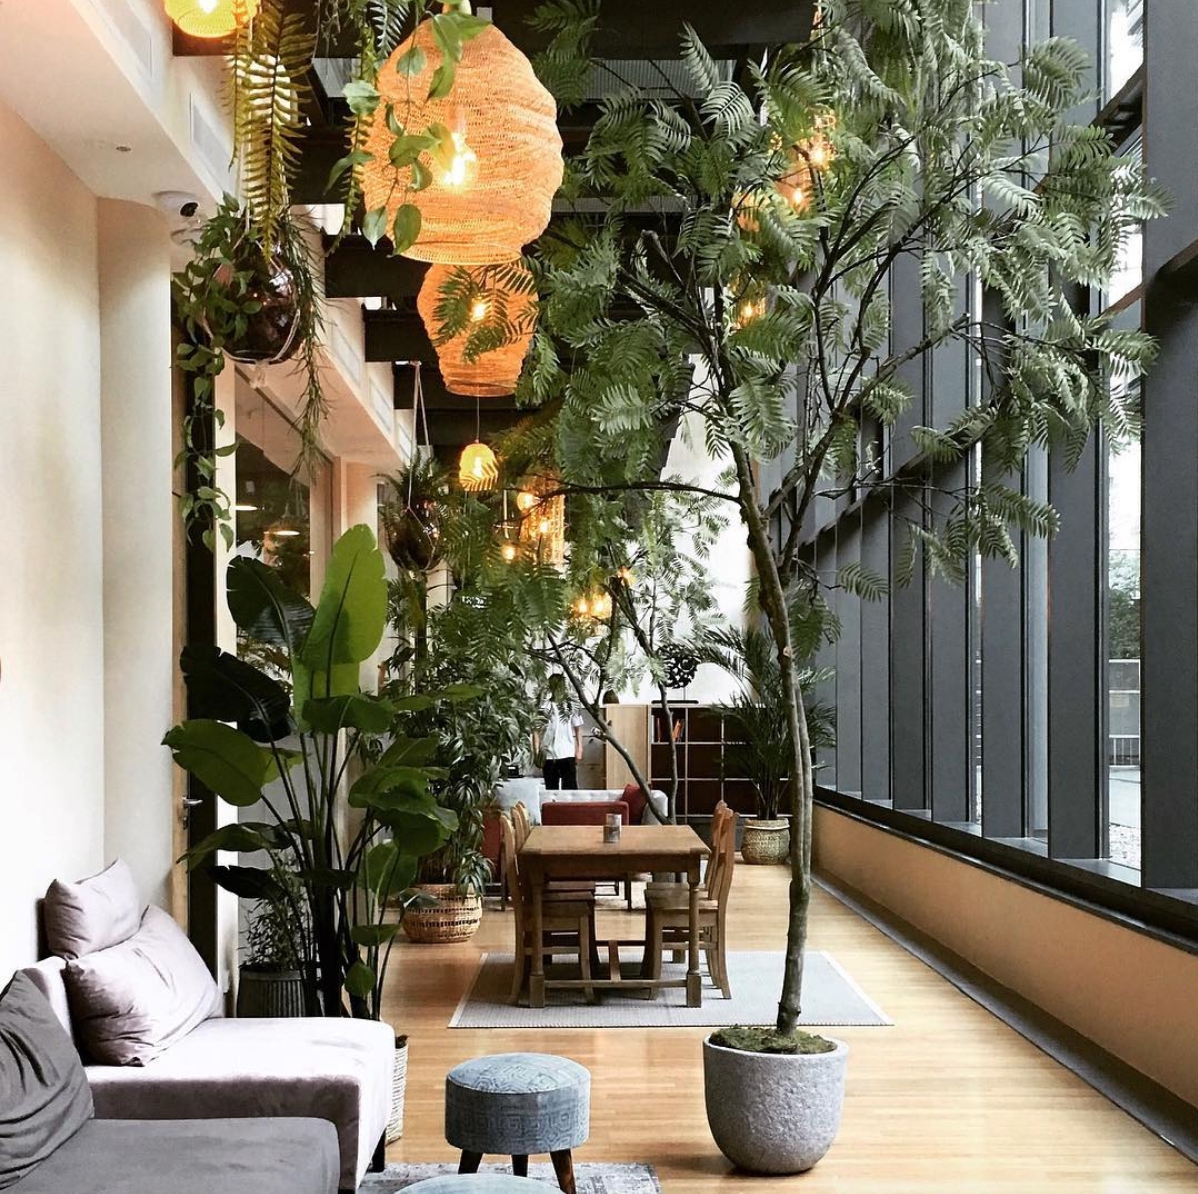 Jungle interior 🌴 #interior #pflanzen #einrichtung #style #plants #zimmerfpflanzen #urbanjungle